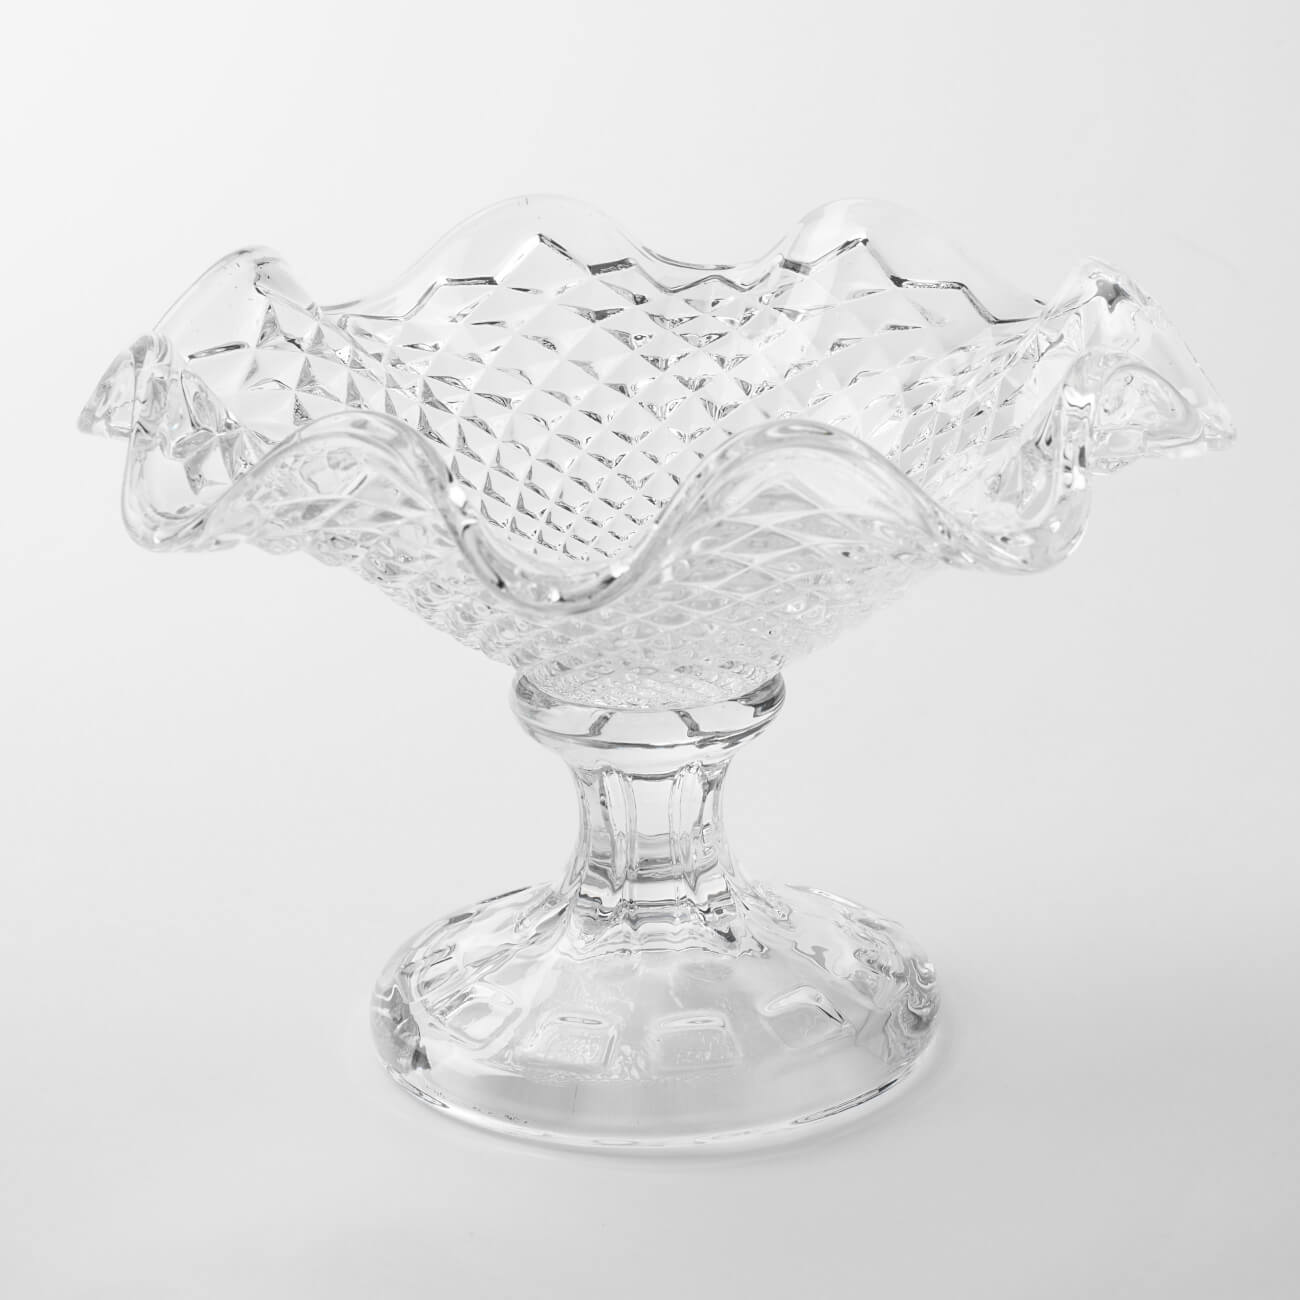 Конфетница, 18х12 см, на ножке, стекло Р, Naiad kuchenland набор для ванной 3 пр стекло пластик naiad